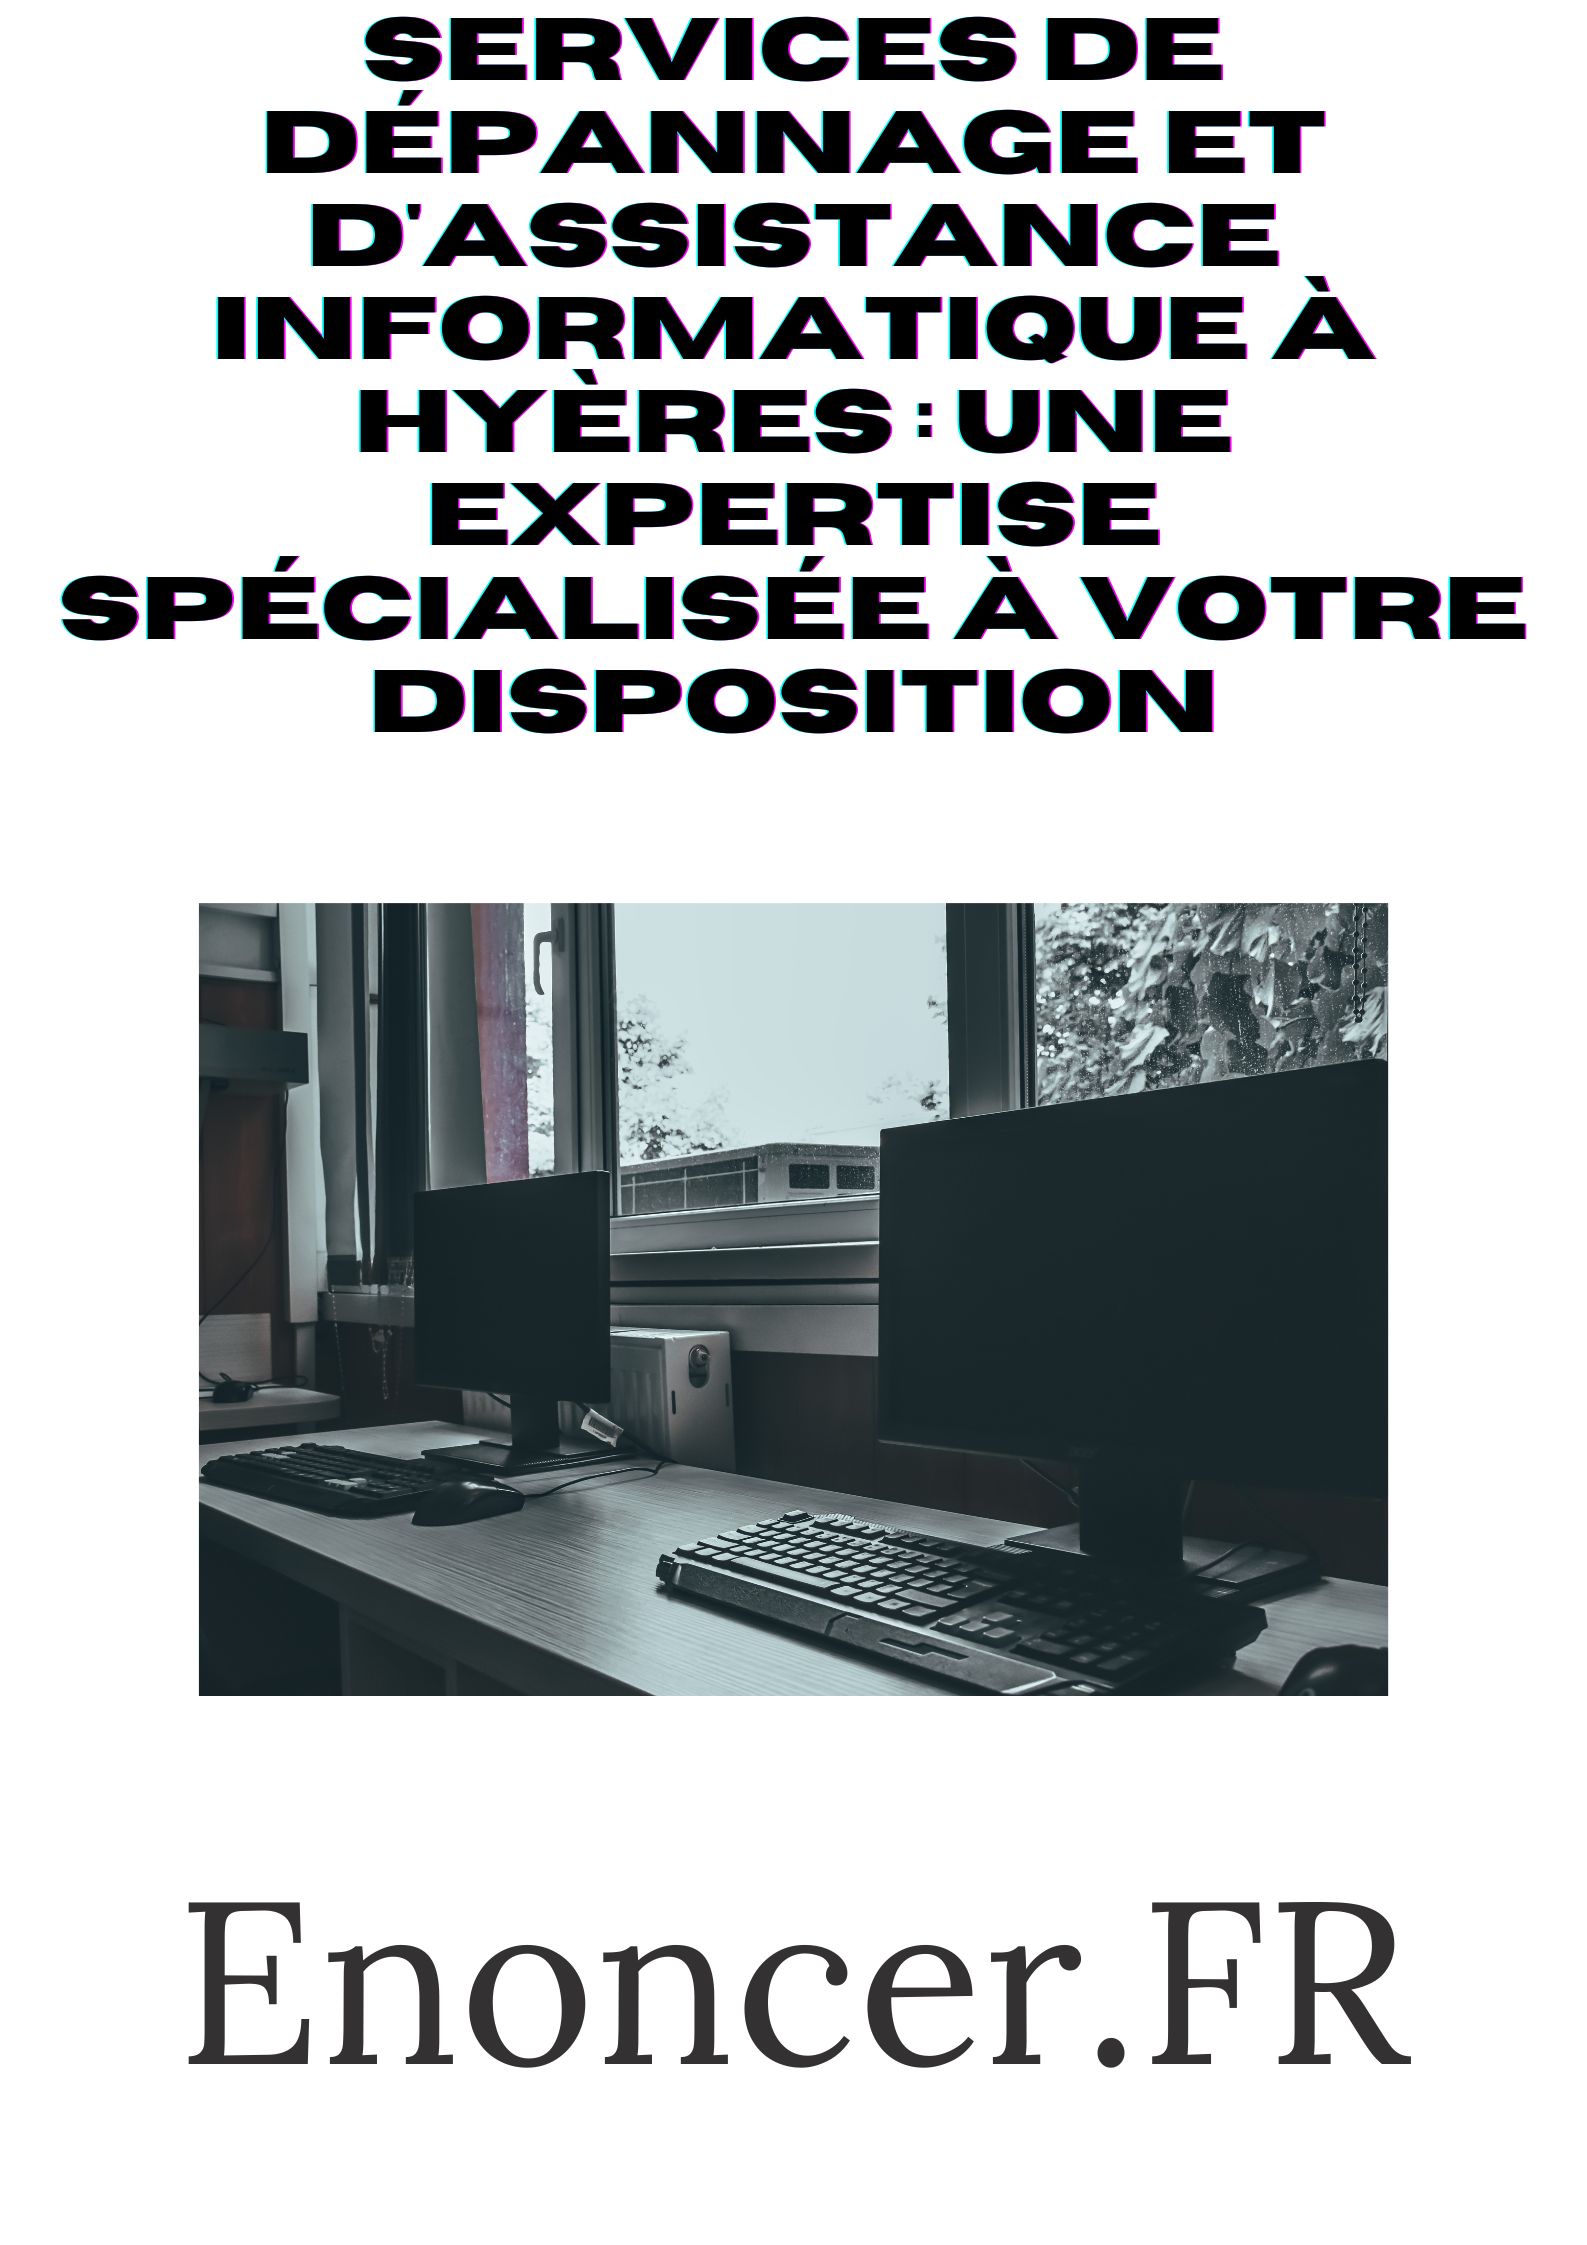 Services de dépannage et d'assistance informatique à Hyères  Une expertise spécialisée à votre disposition.jpg, mai 2023